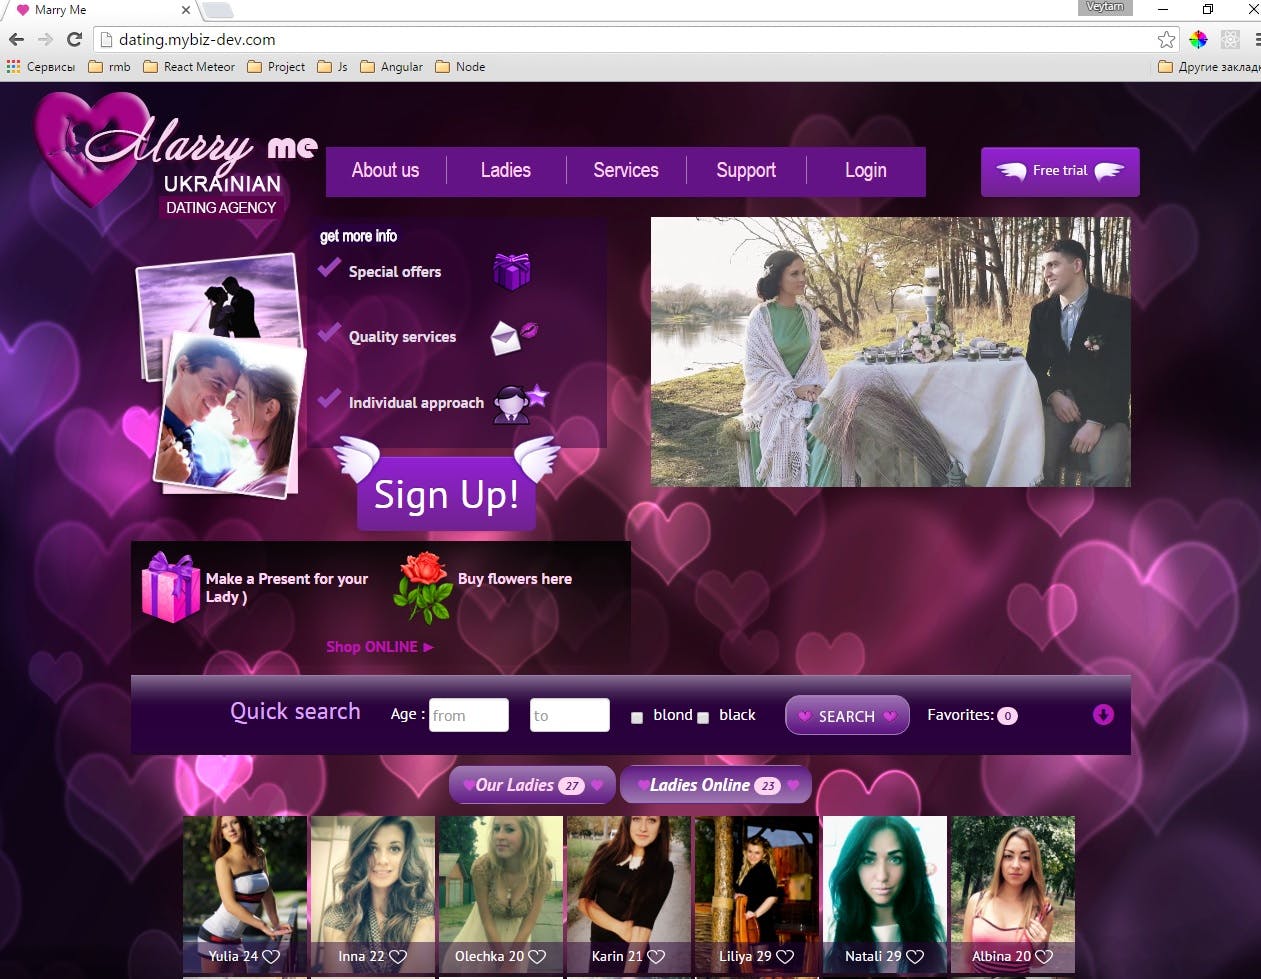 Dating site. MyBiz in 2015